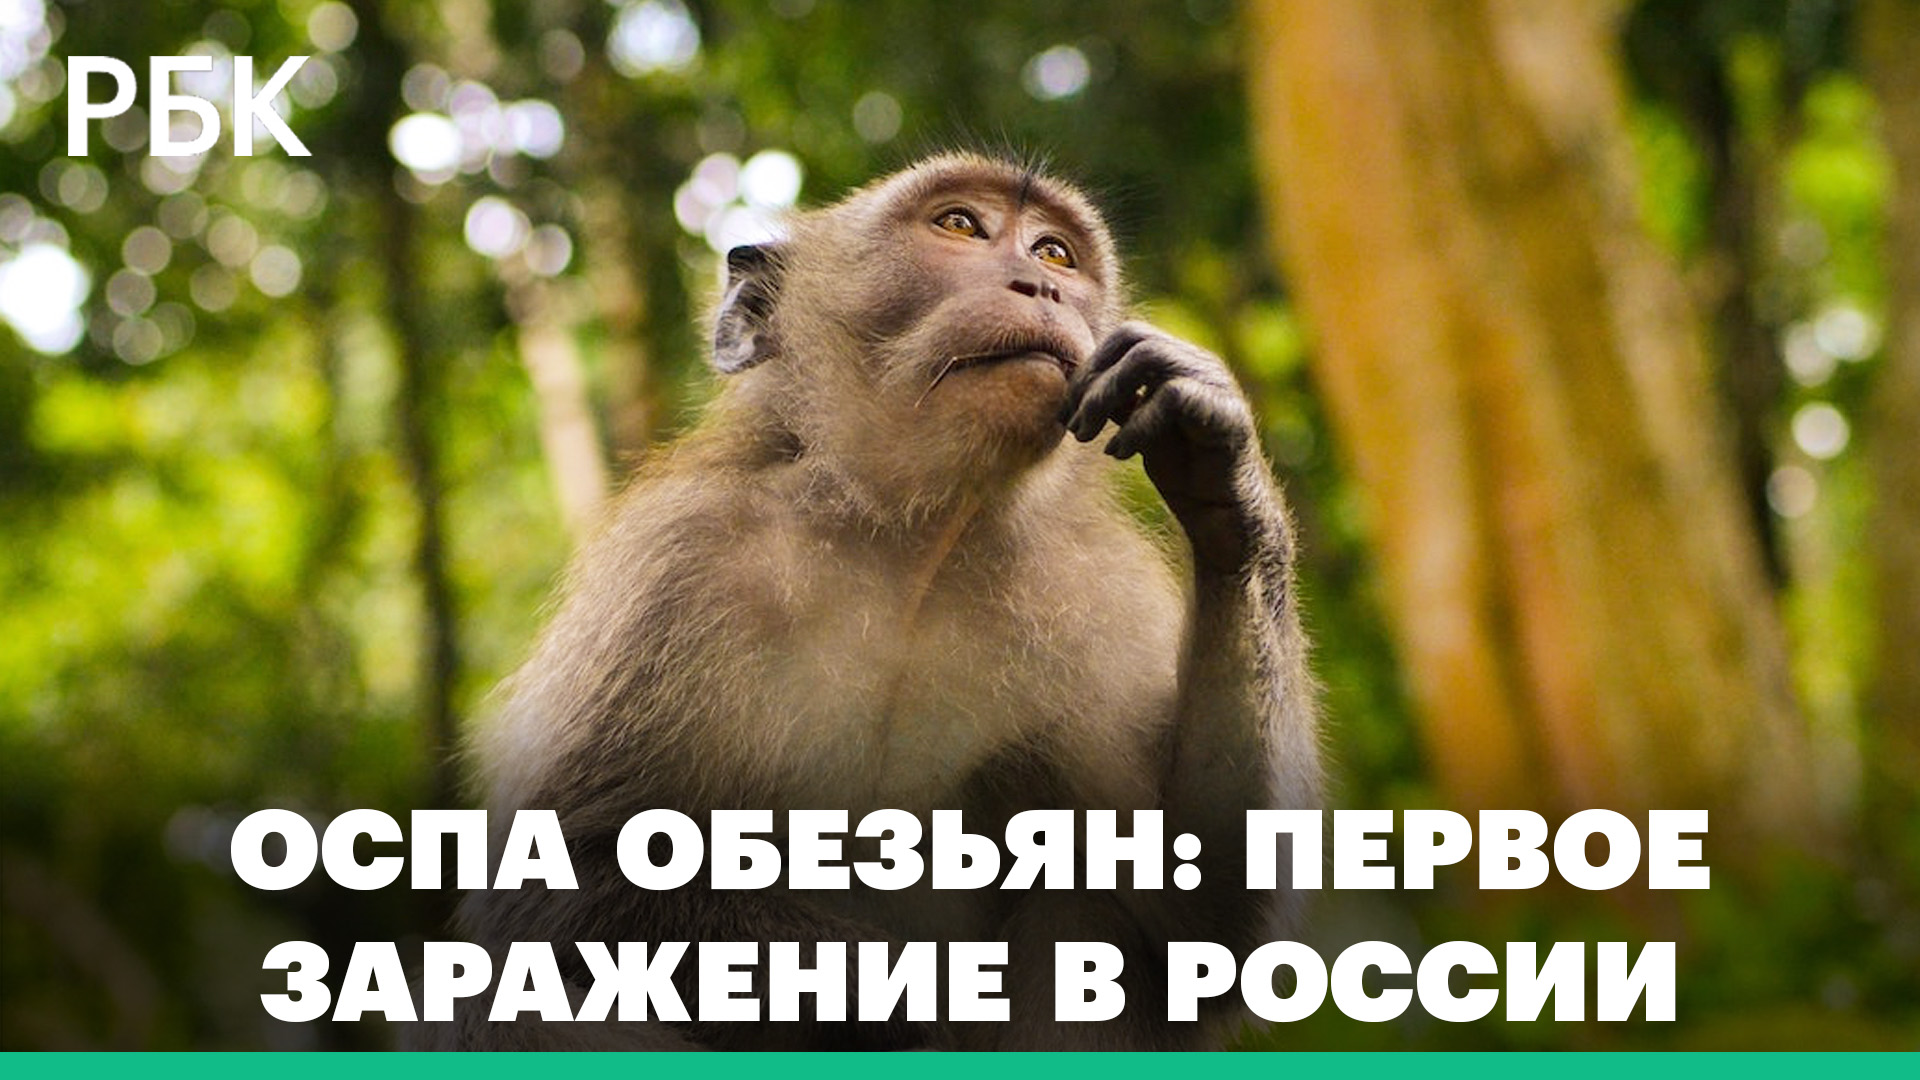 Оспа обезьян: первое заражение в России по сообщению Роспотребнадзора